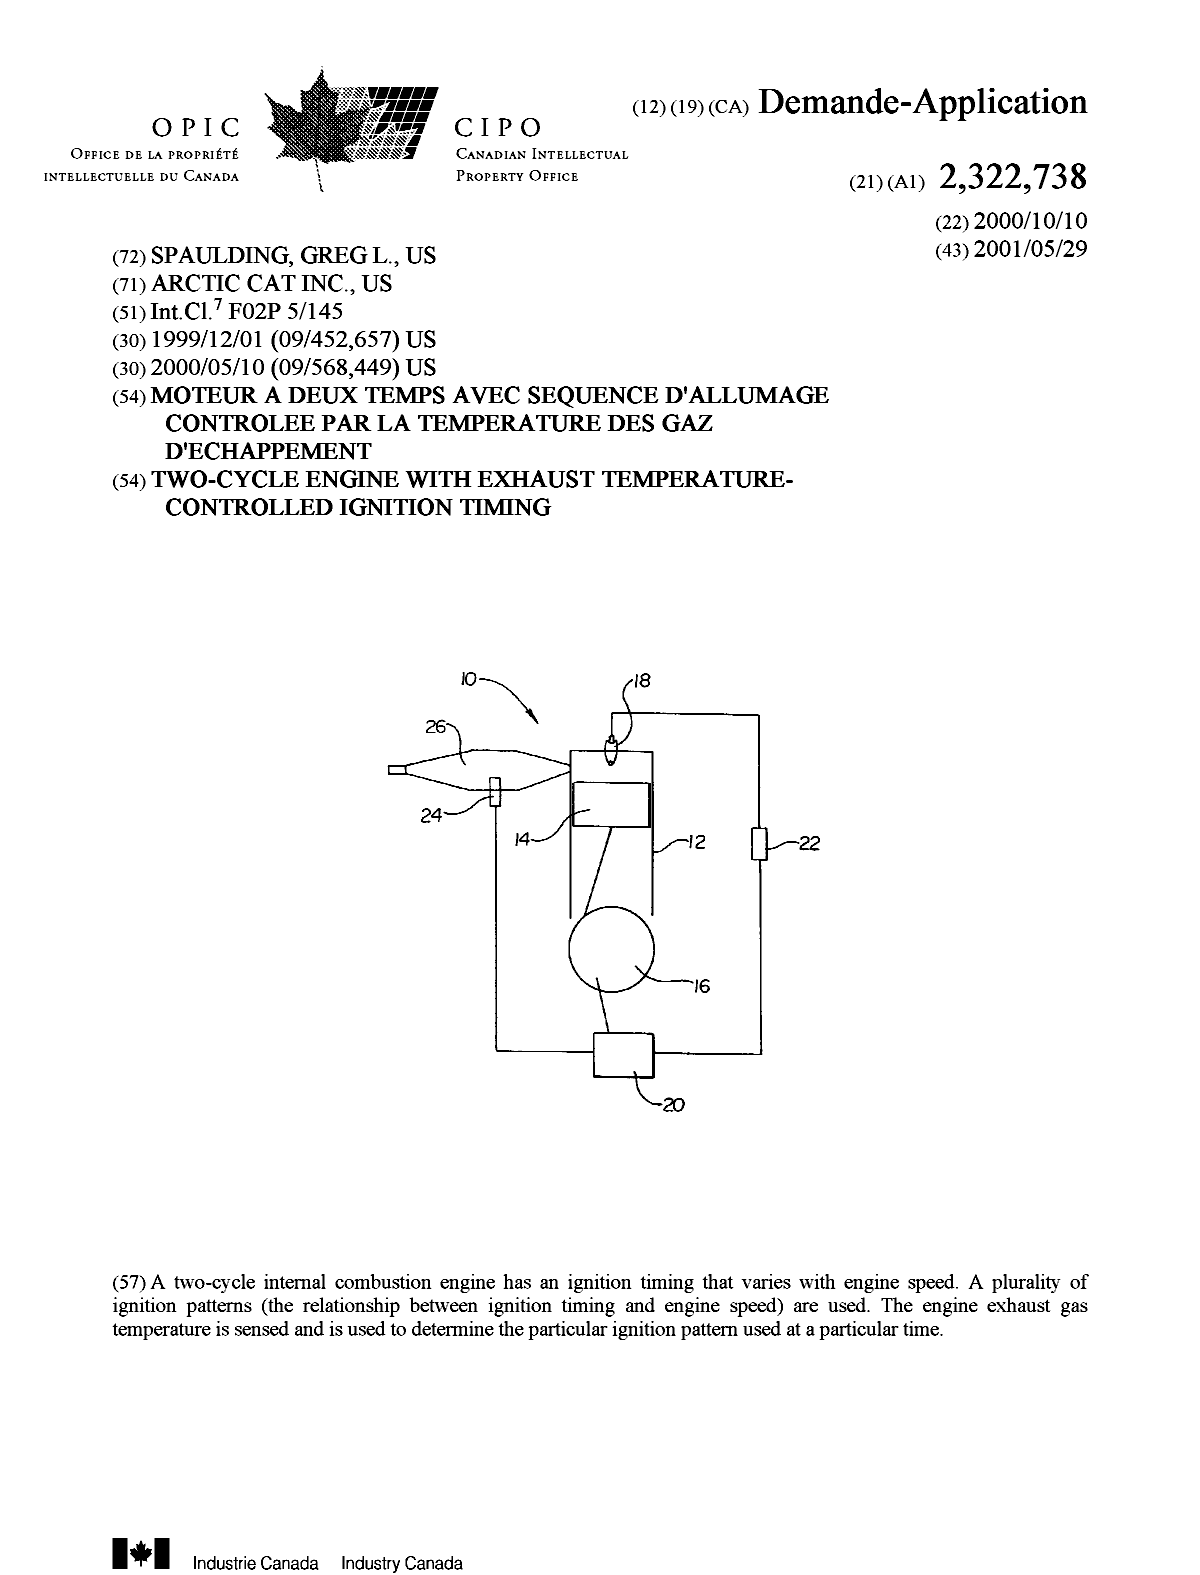 Document de brevet canadien 2322738. Page couverture 20010530. Image 1 de 1